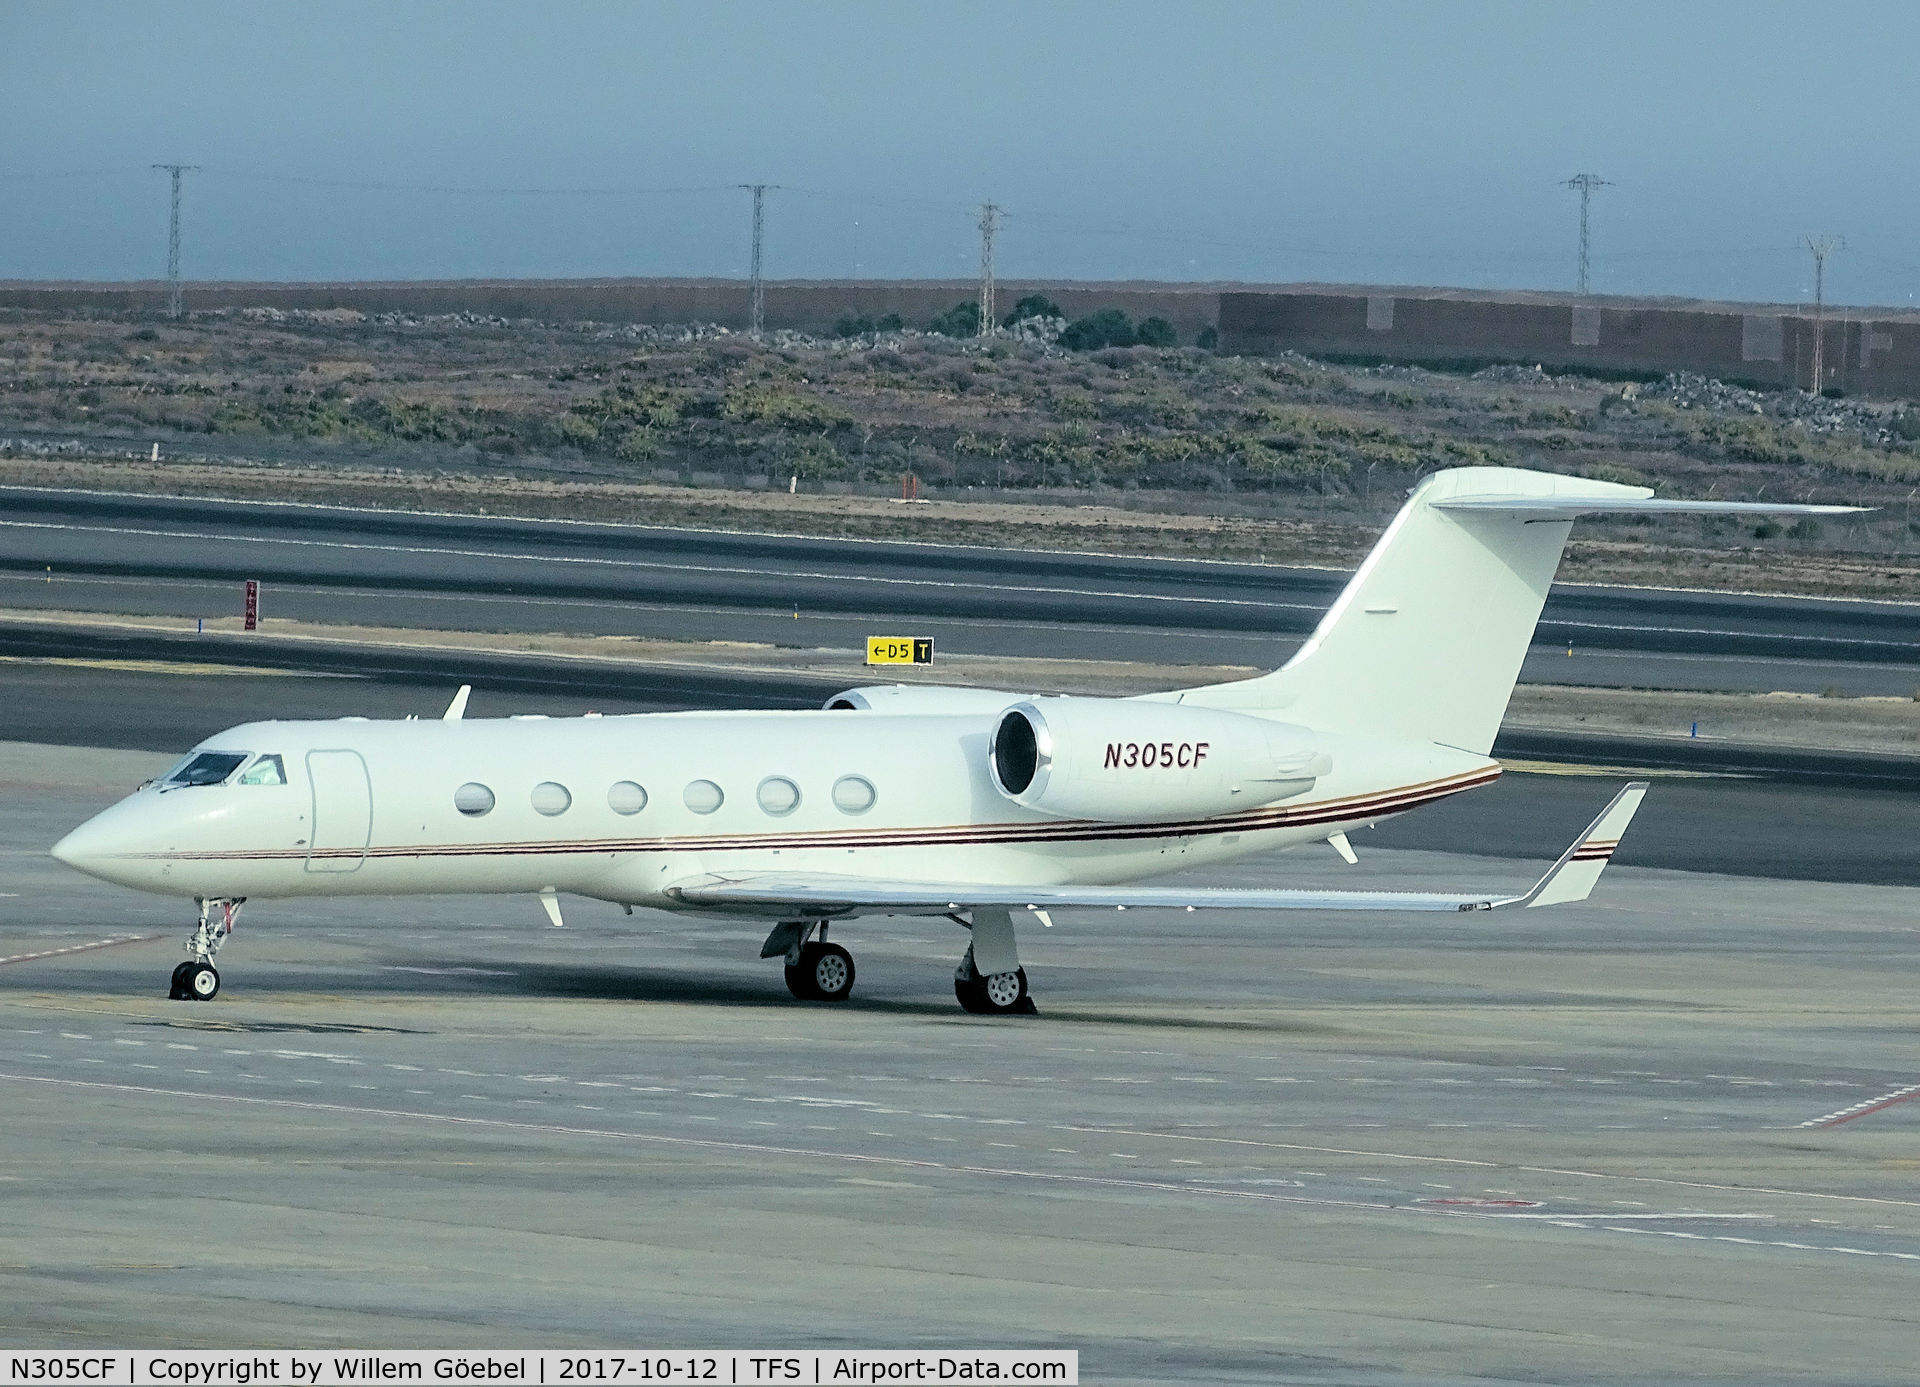 N305CF, 2001 Gulfstream Aerospace G-IV C/N 1457, Parking on TFS